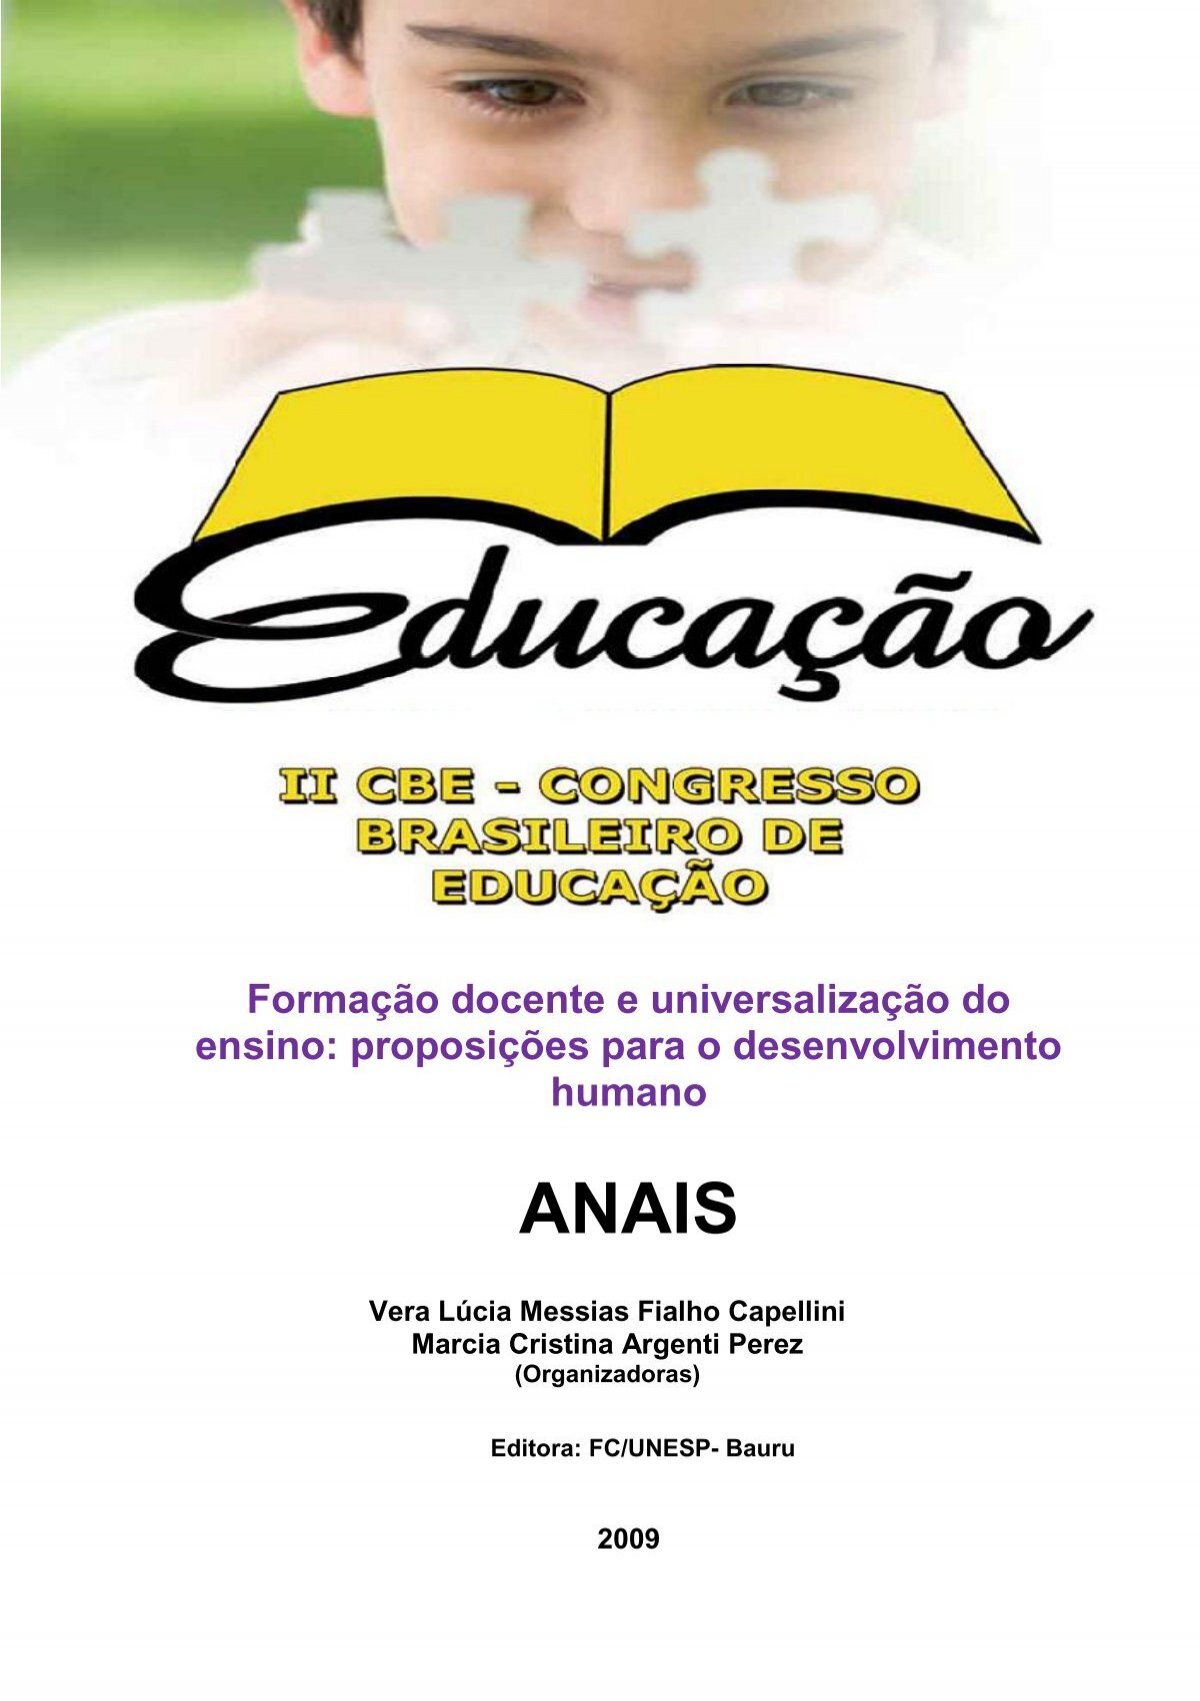 2º ano C - Ana Gabriella: 09 de março (terça-feira): Português, Matemática  e Ensino Religioso.